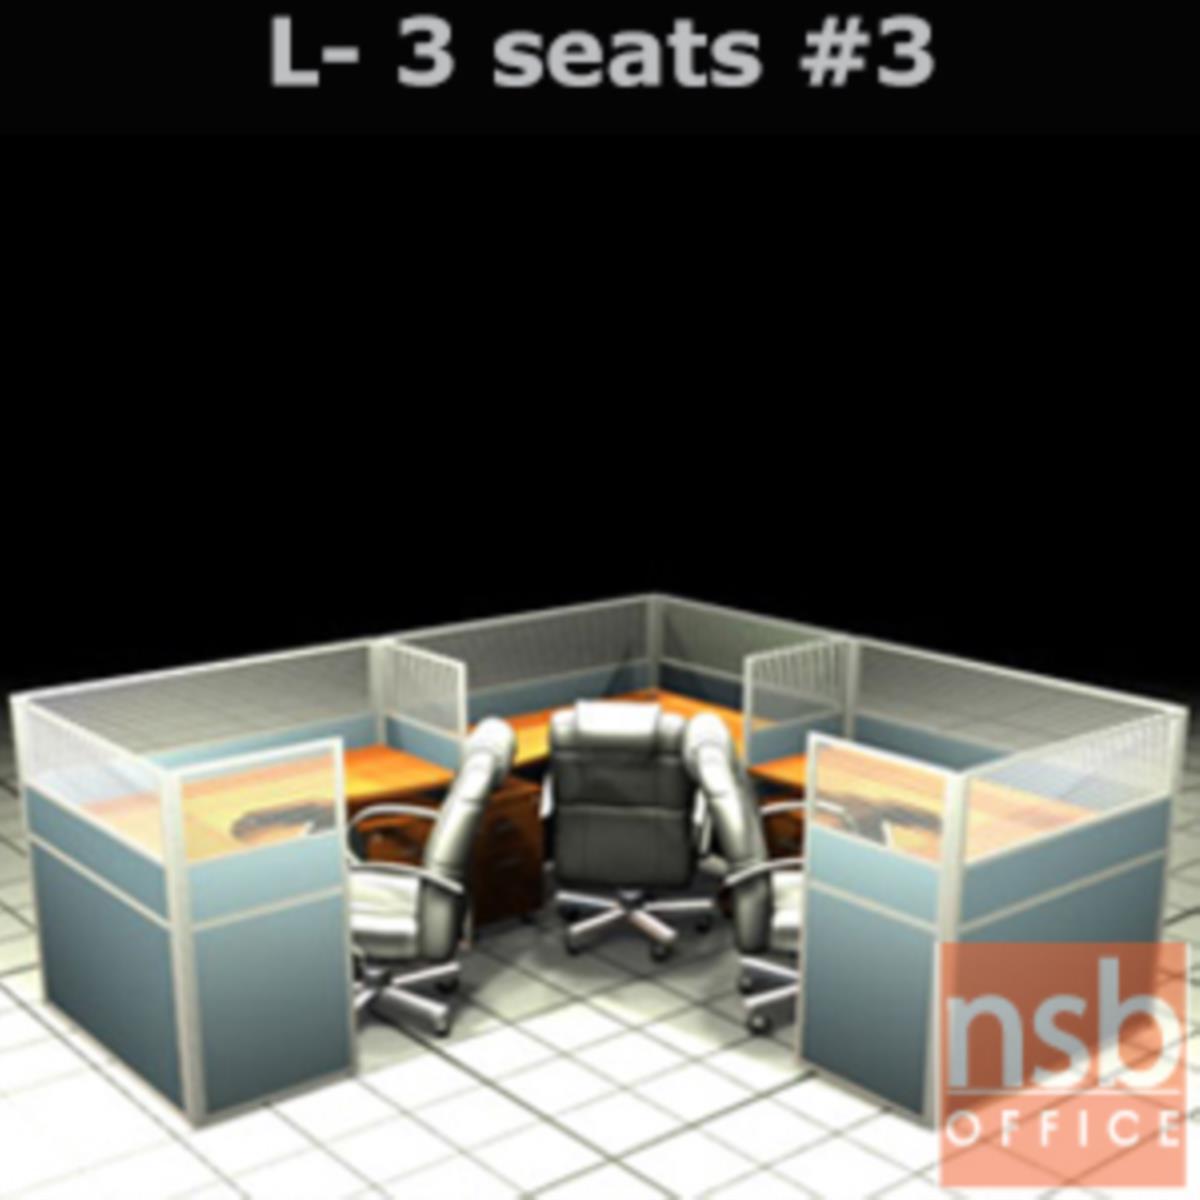 A04A107:ชุดโต๊ะทำงานกลุ่มตัวแอล 3 ที่นั่ง   ขนาดรวม 306W*276D cm. พร้อมพาร์ทิชั่นครึ่งกระจกขัดลาย